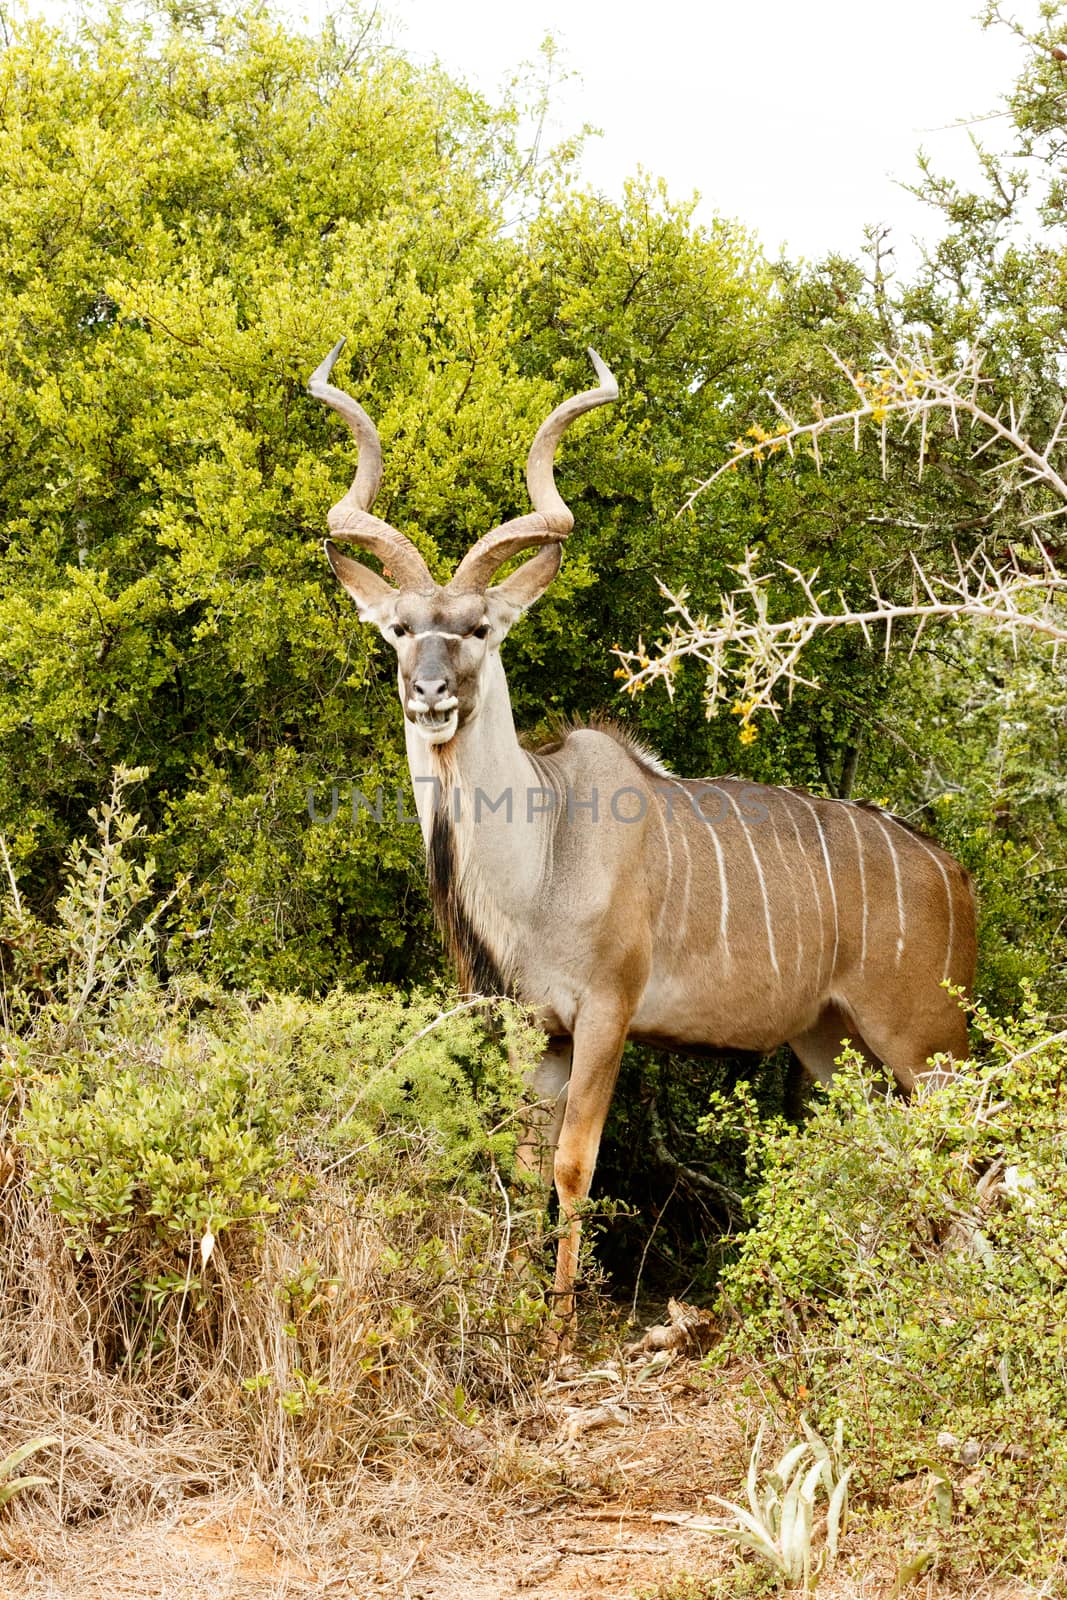 Greater Kudu - Tragelaphus strepsiceros by markdescande